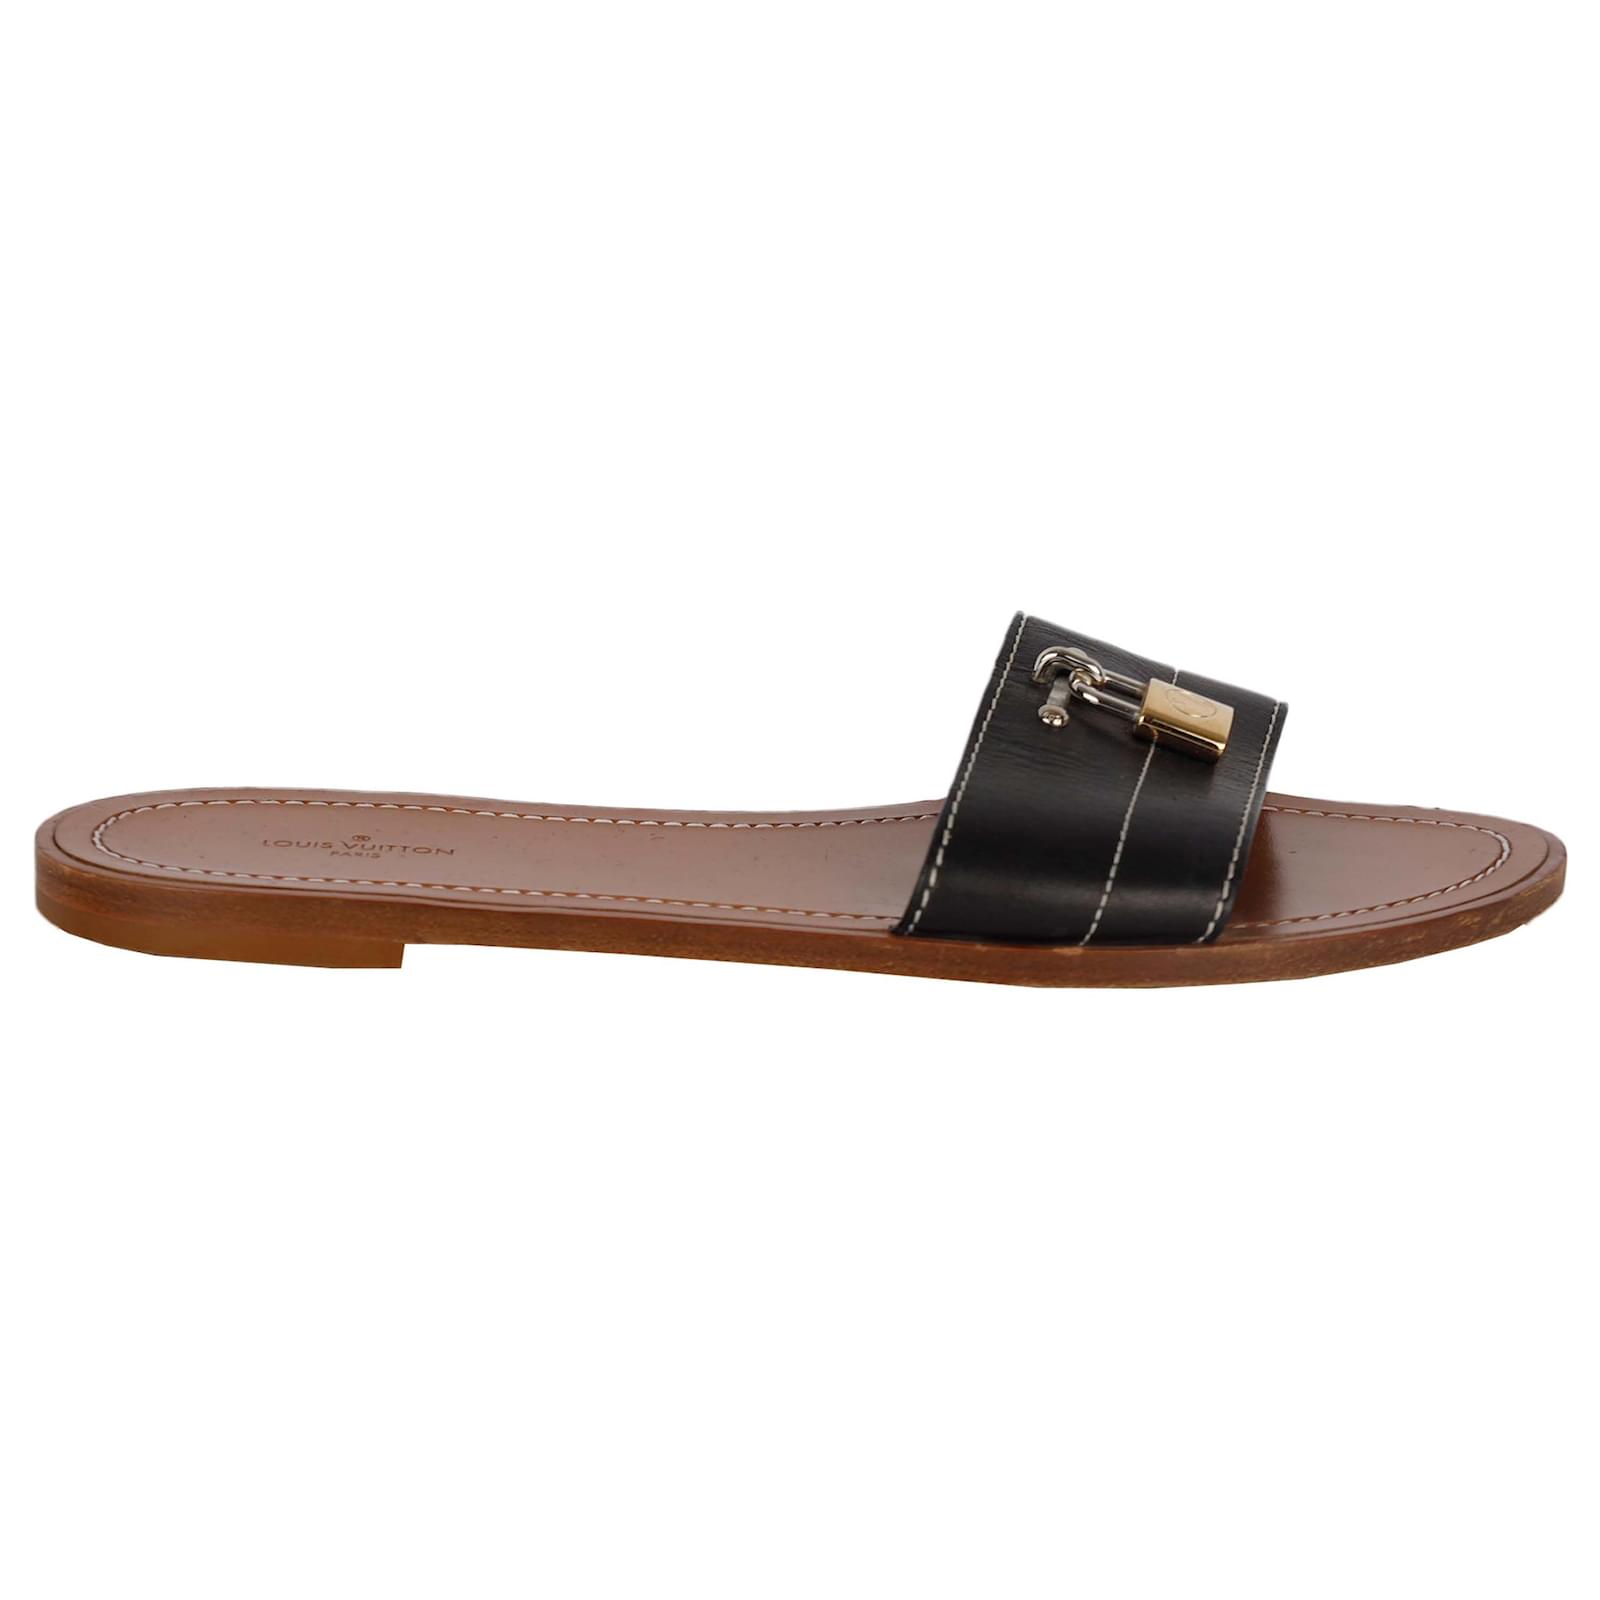 Louis Vuitton Women's Lock It Flat Mule Sandals